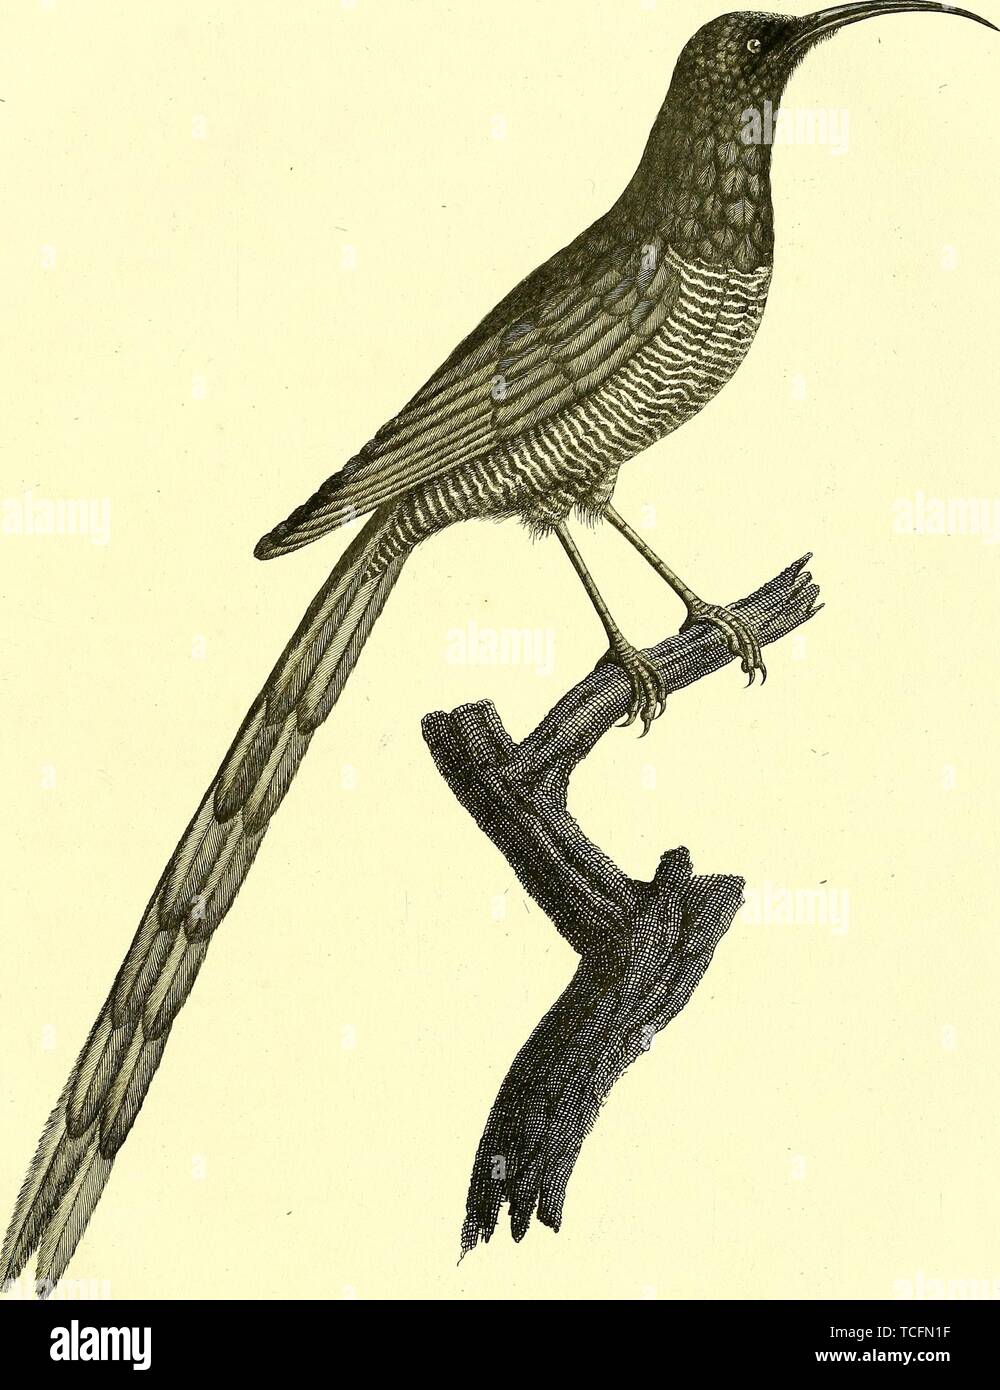 Zeichnung des Red-billed Promerops eingraviert, aus dem Buch "Oiseaux dores ou ein reflets metalliques' von Jean Baptiste Audebert, 1825. Mit freundlicher Genehmigung Internet Archive. () Stockfoto